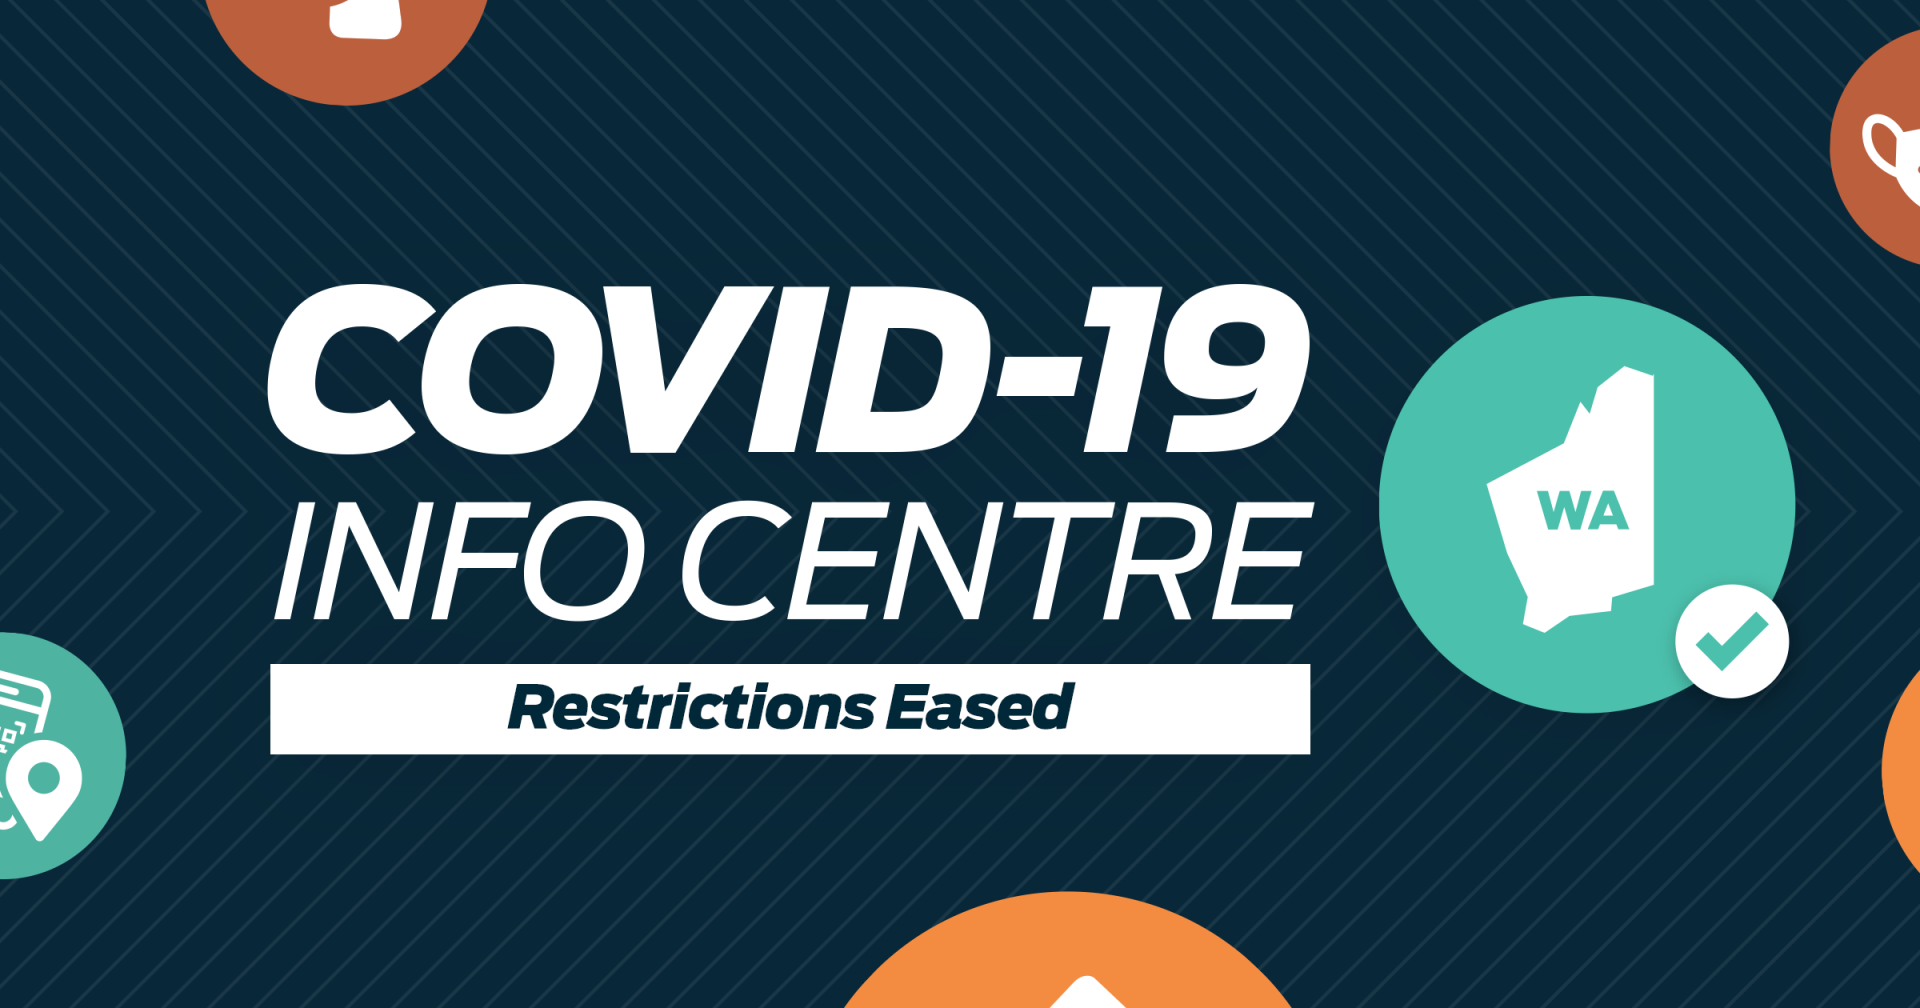 COVID-19 Information Centre